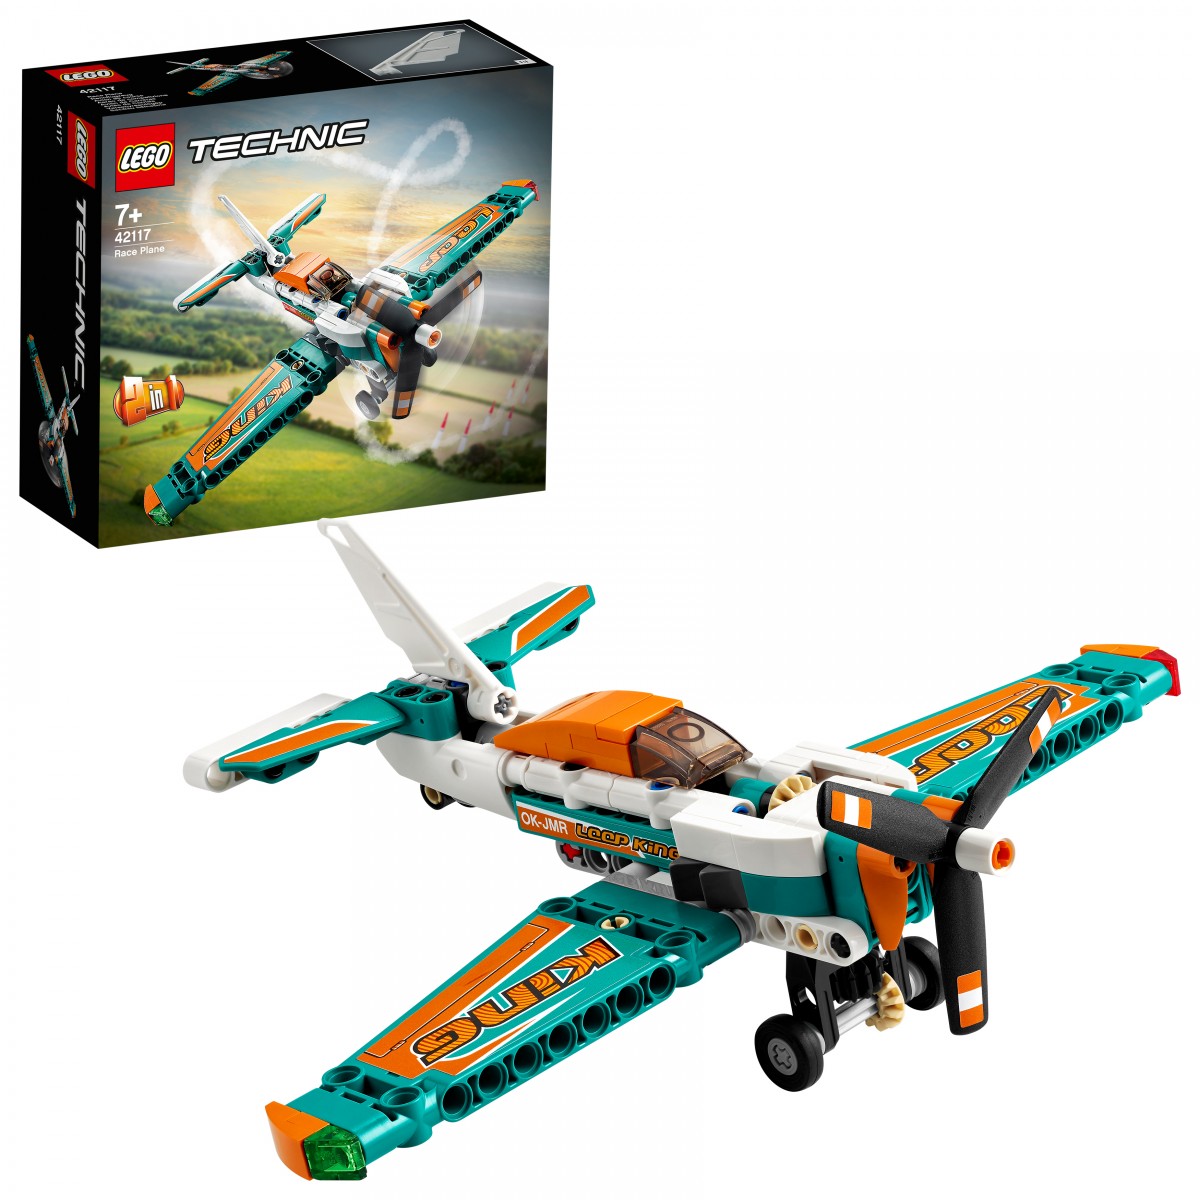 Lego Race Plane Lego Blocks for Kids Age 7Y+